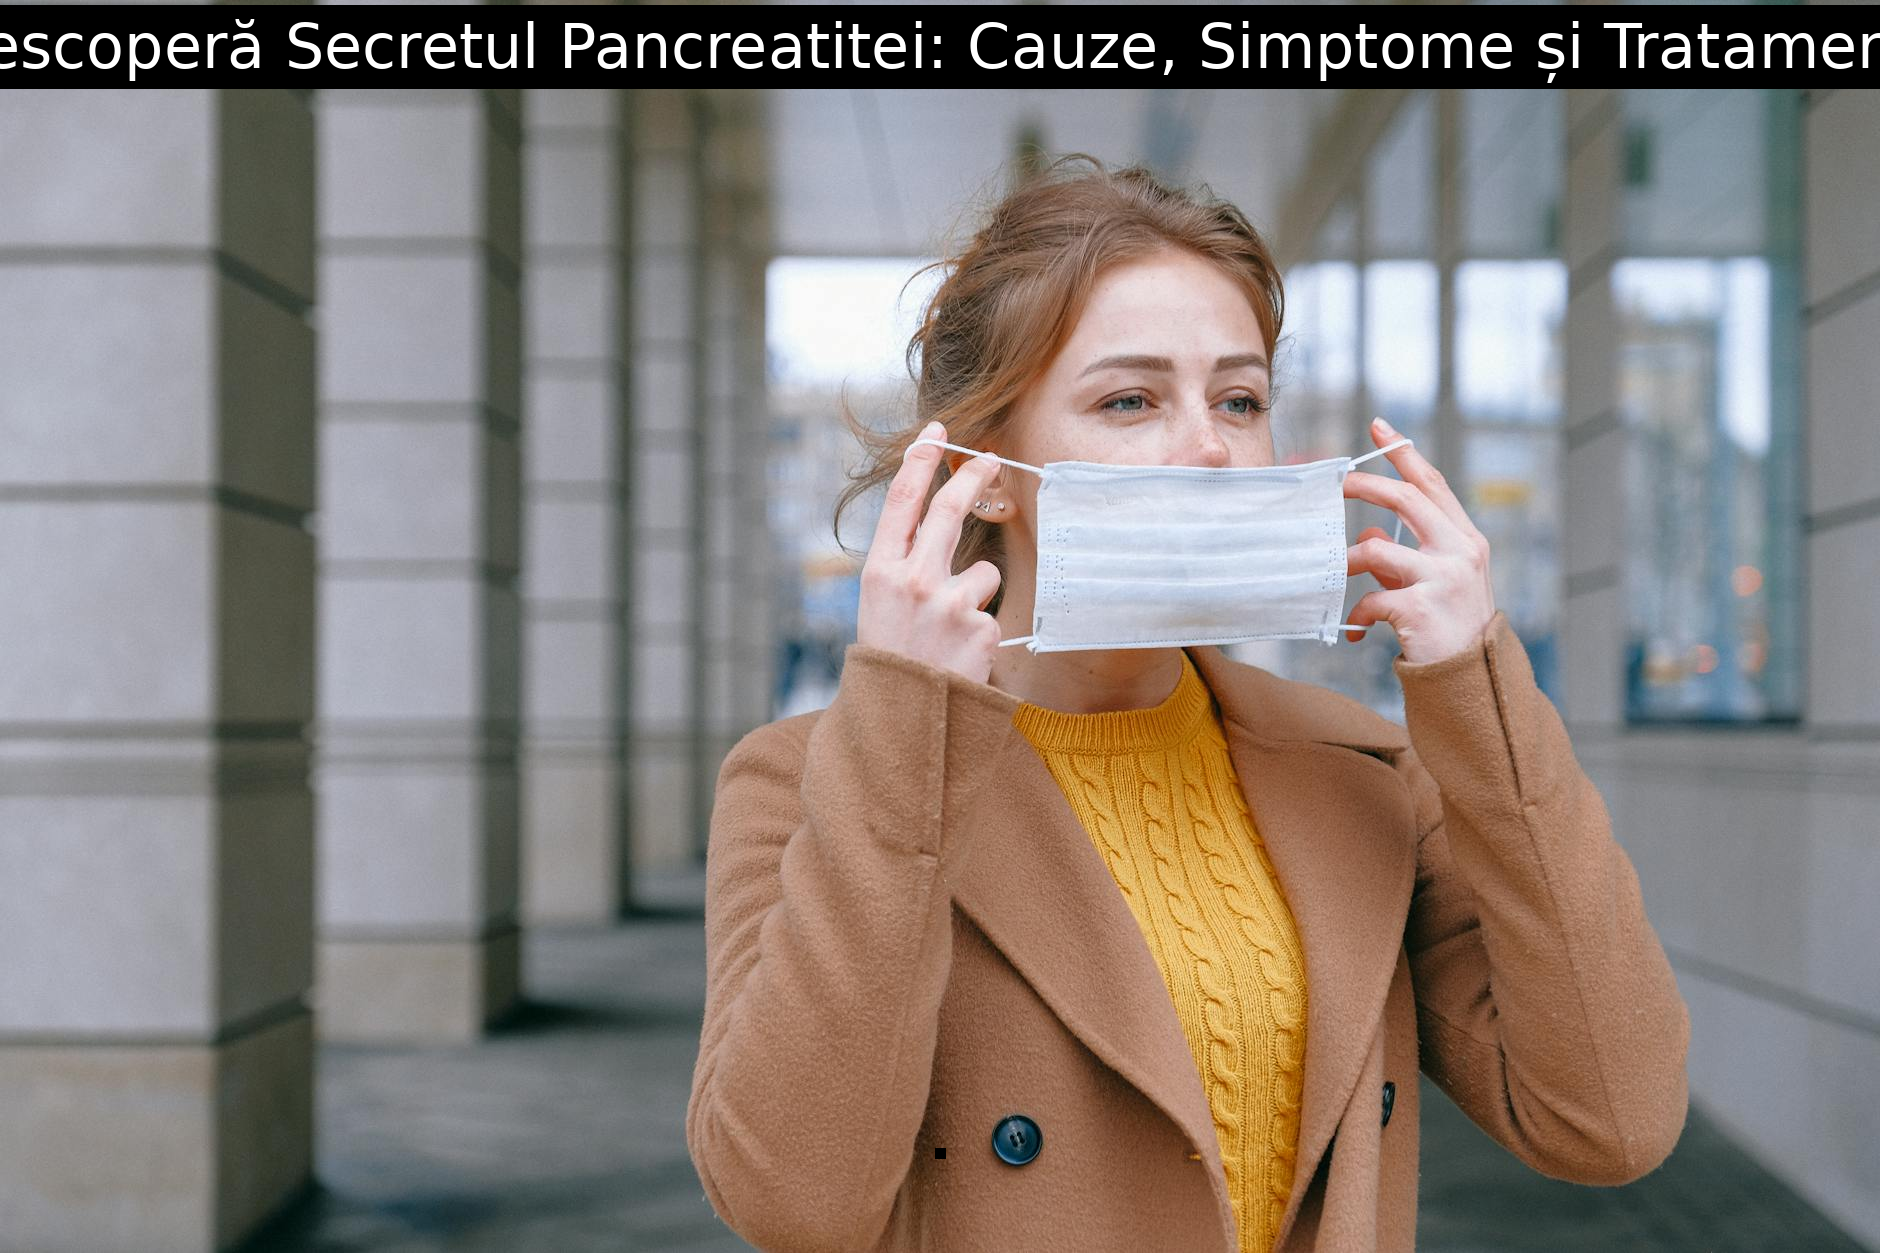 Descoperă Secretul Pancreatitei: Cauze, Simptome și Tratament!